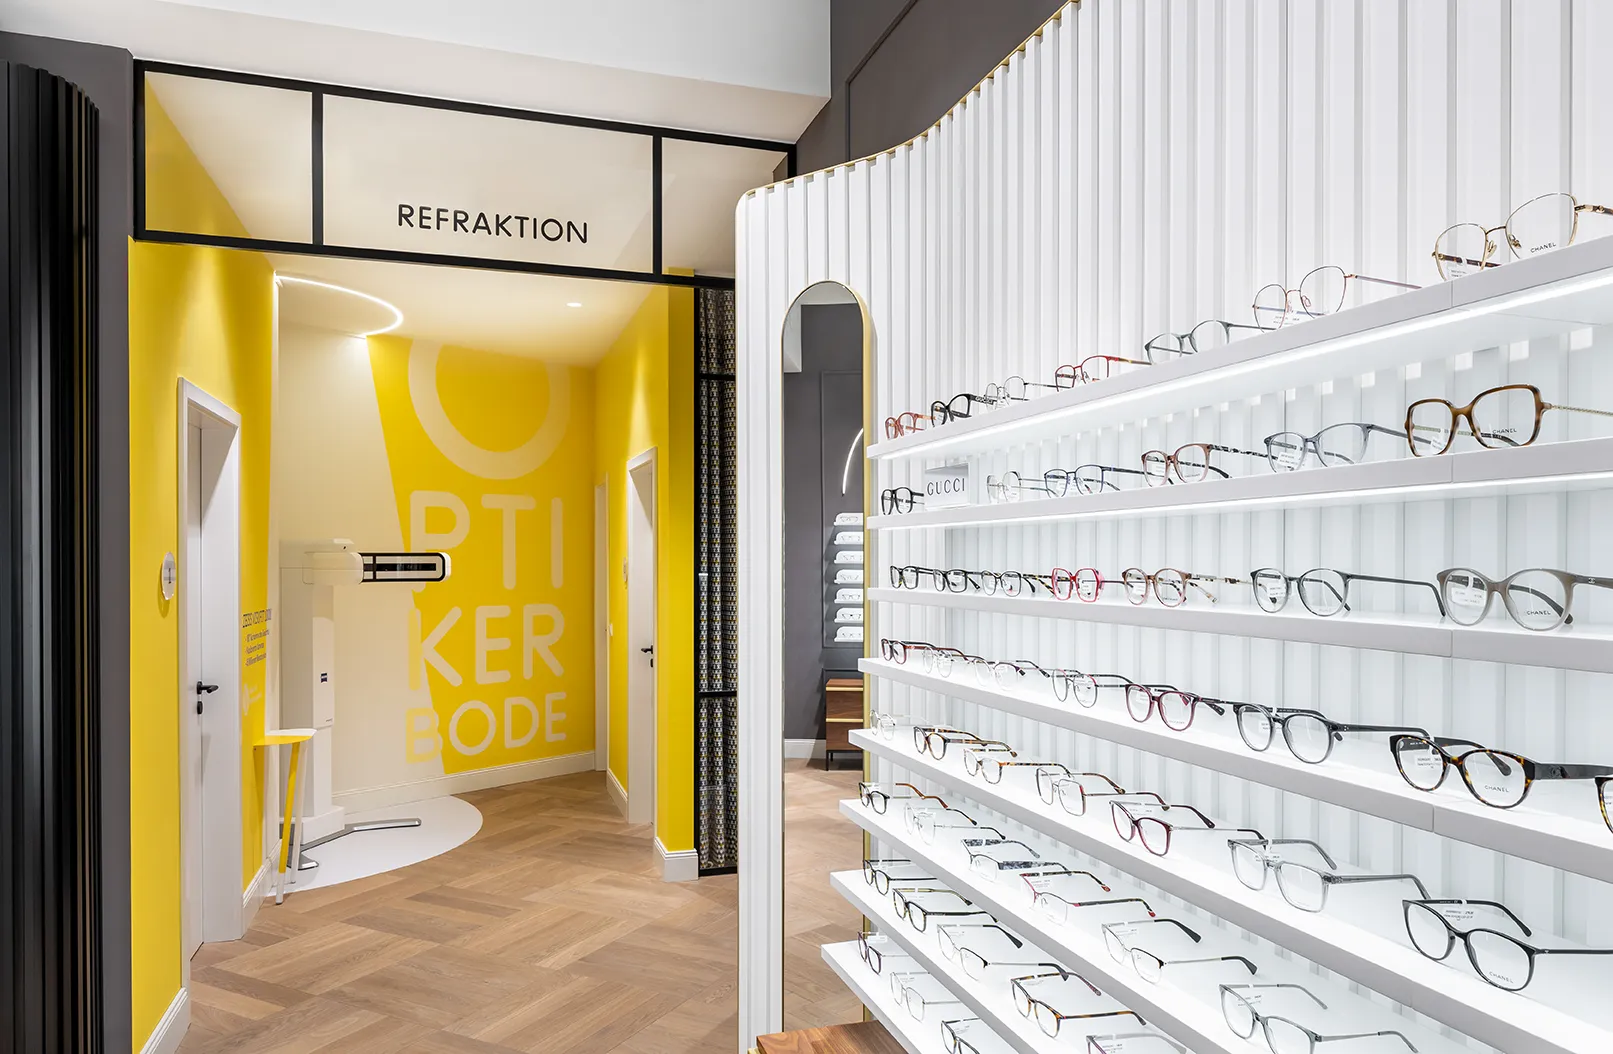 Blick in den Bereich Refraktion mit Fokus auf das Brillensortiment in Verkaufsregalen